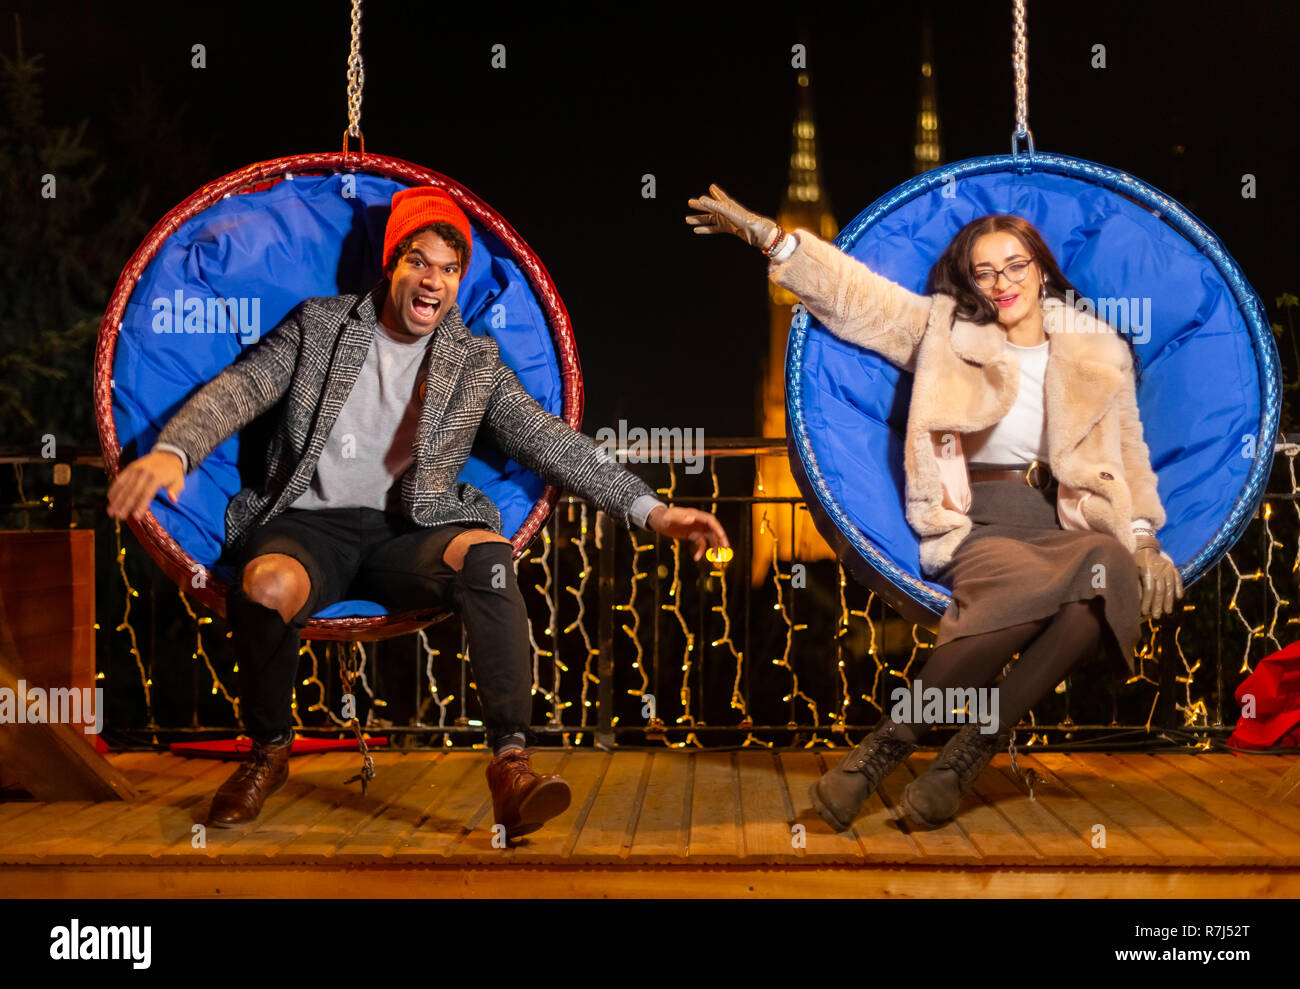 Couple pose pour photo sur balançoire au marché de Noël, Zagreb, Croatie. Banque D'Images